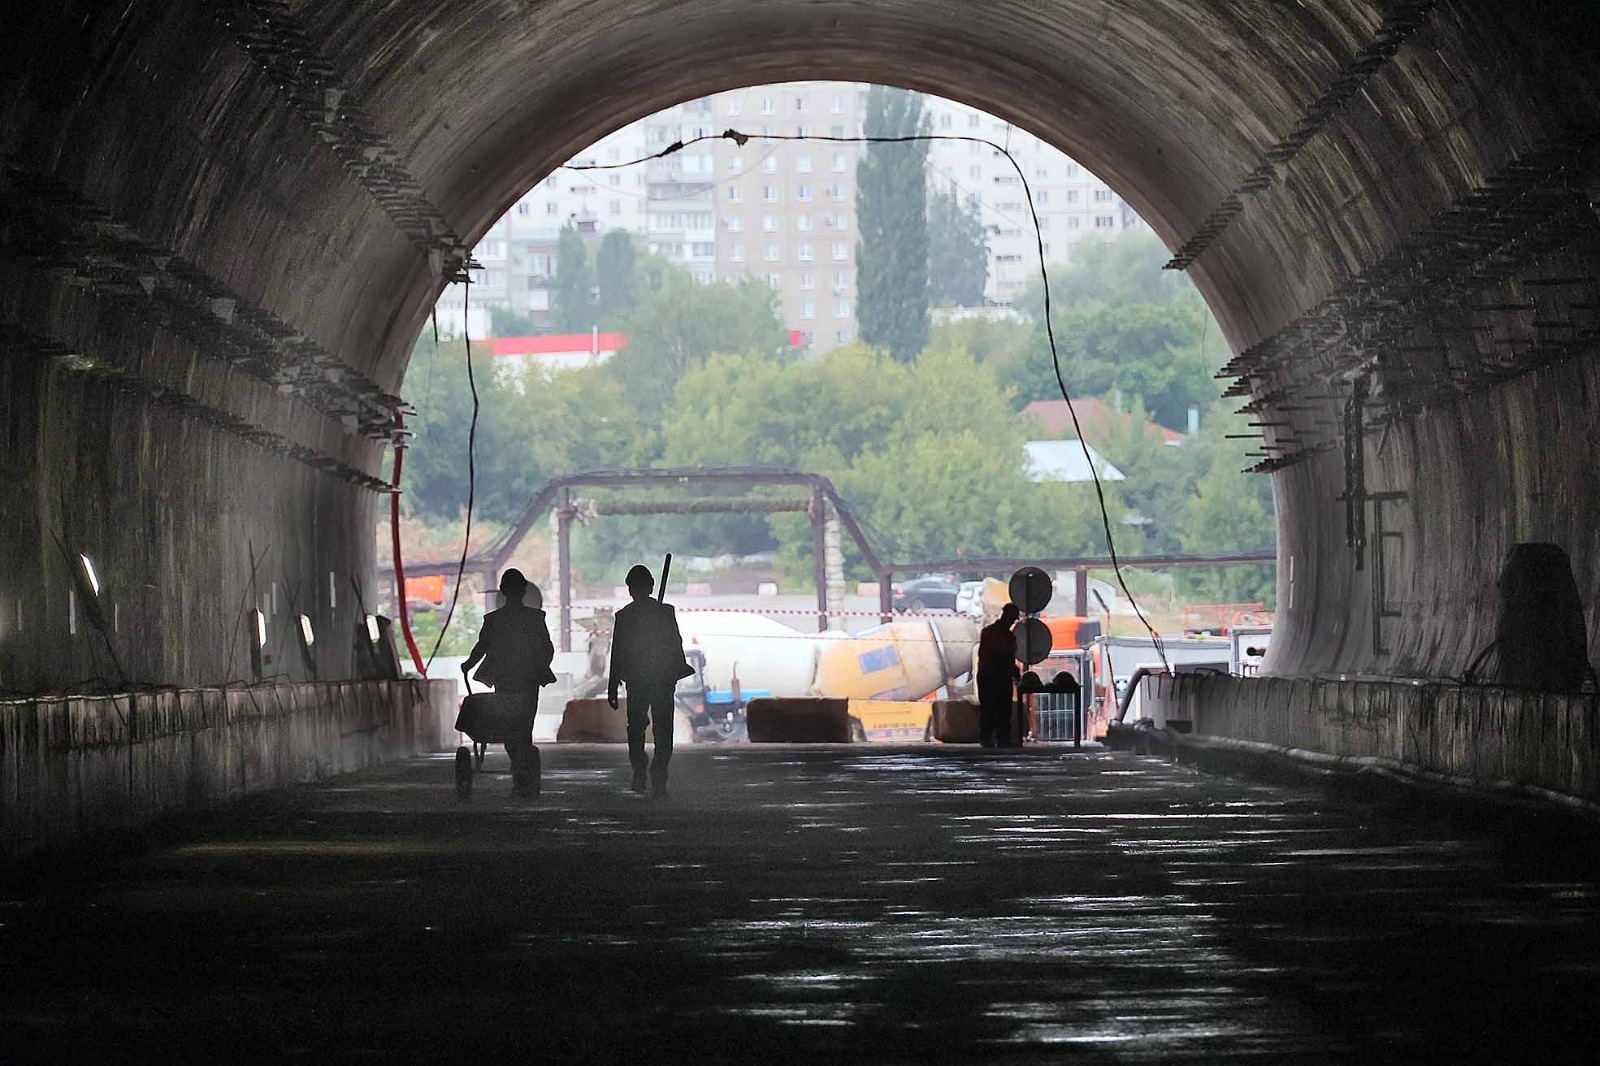 Александр ДАНИЛОВ  У главного транспортного инфраструктурного проекта в столице республики появился свет в конце тоннеля.